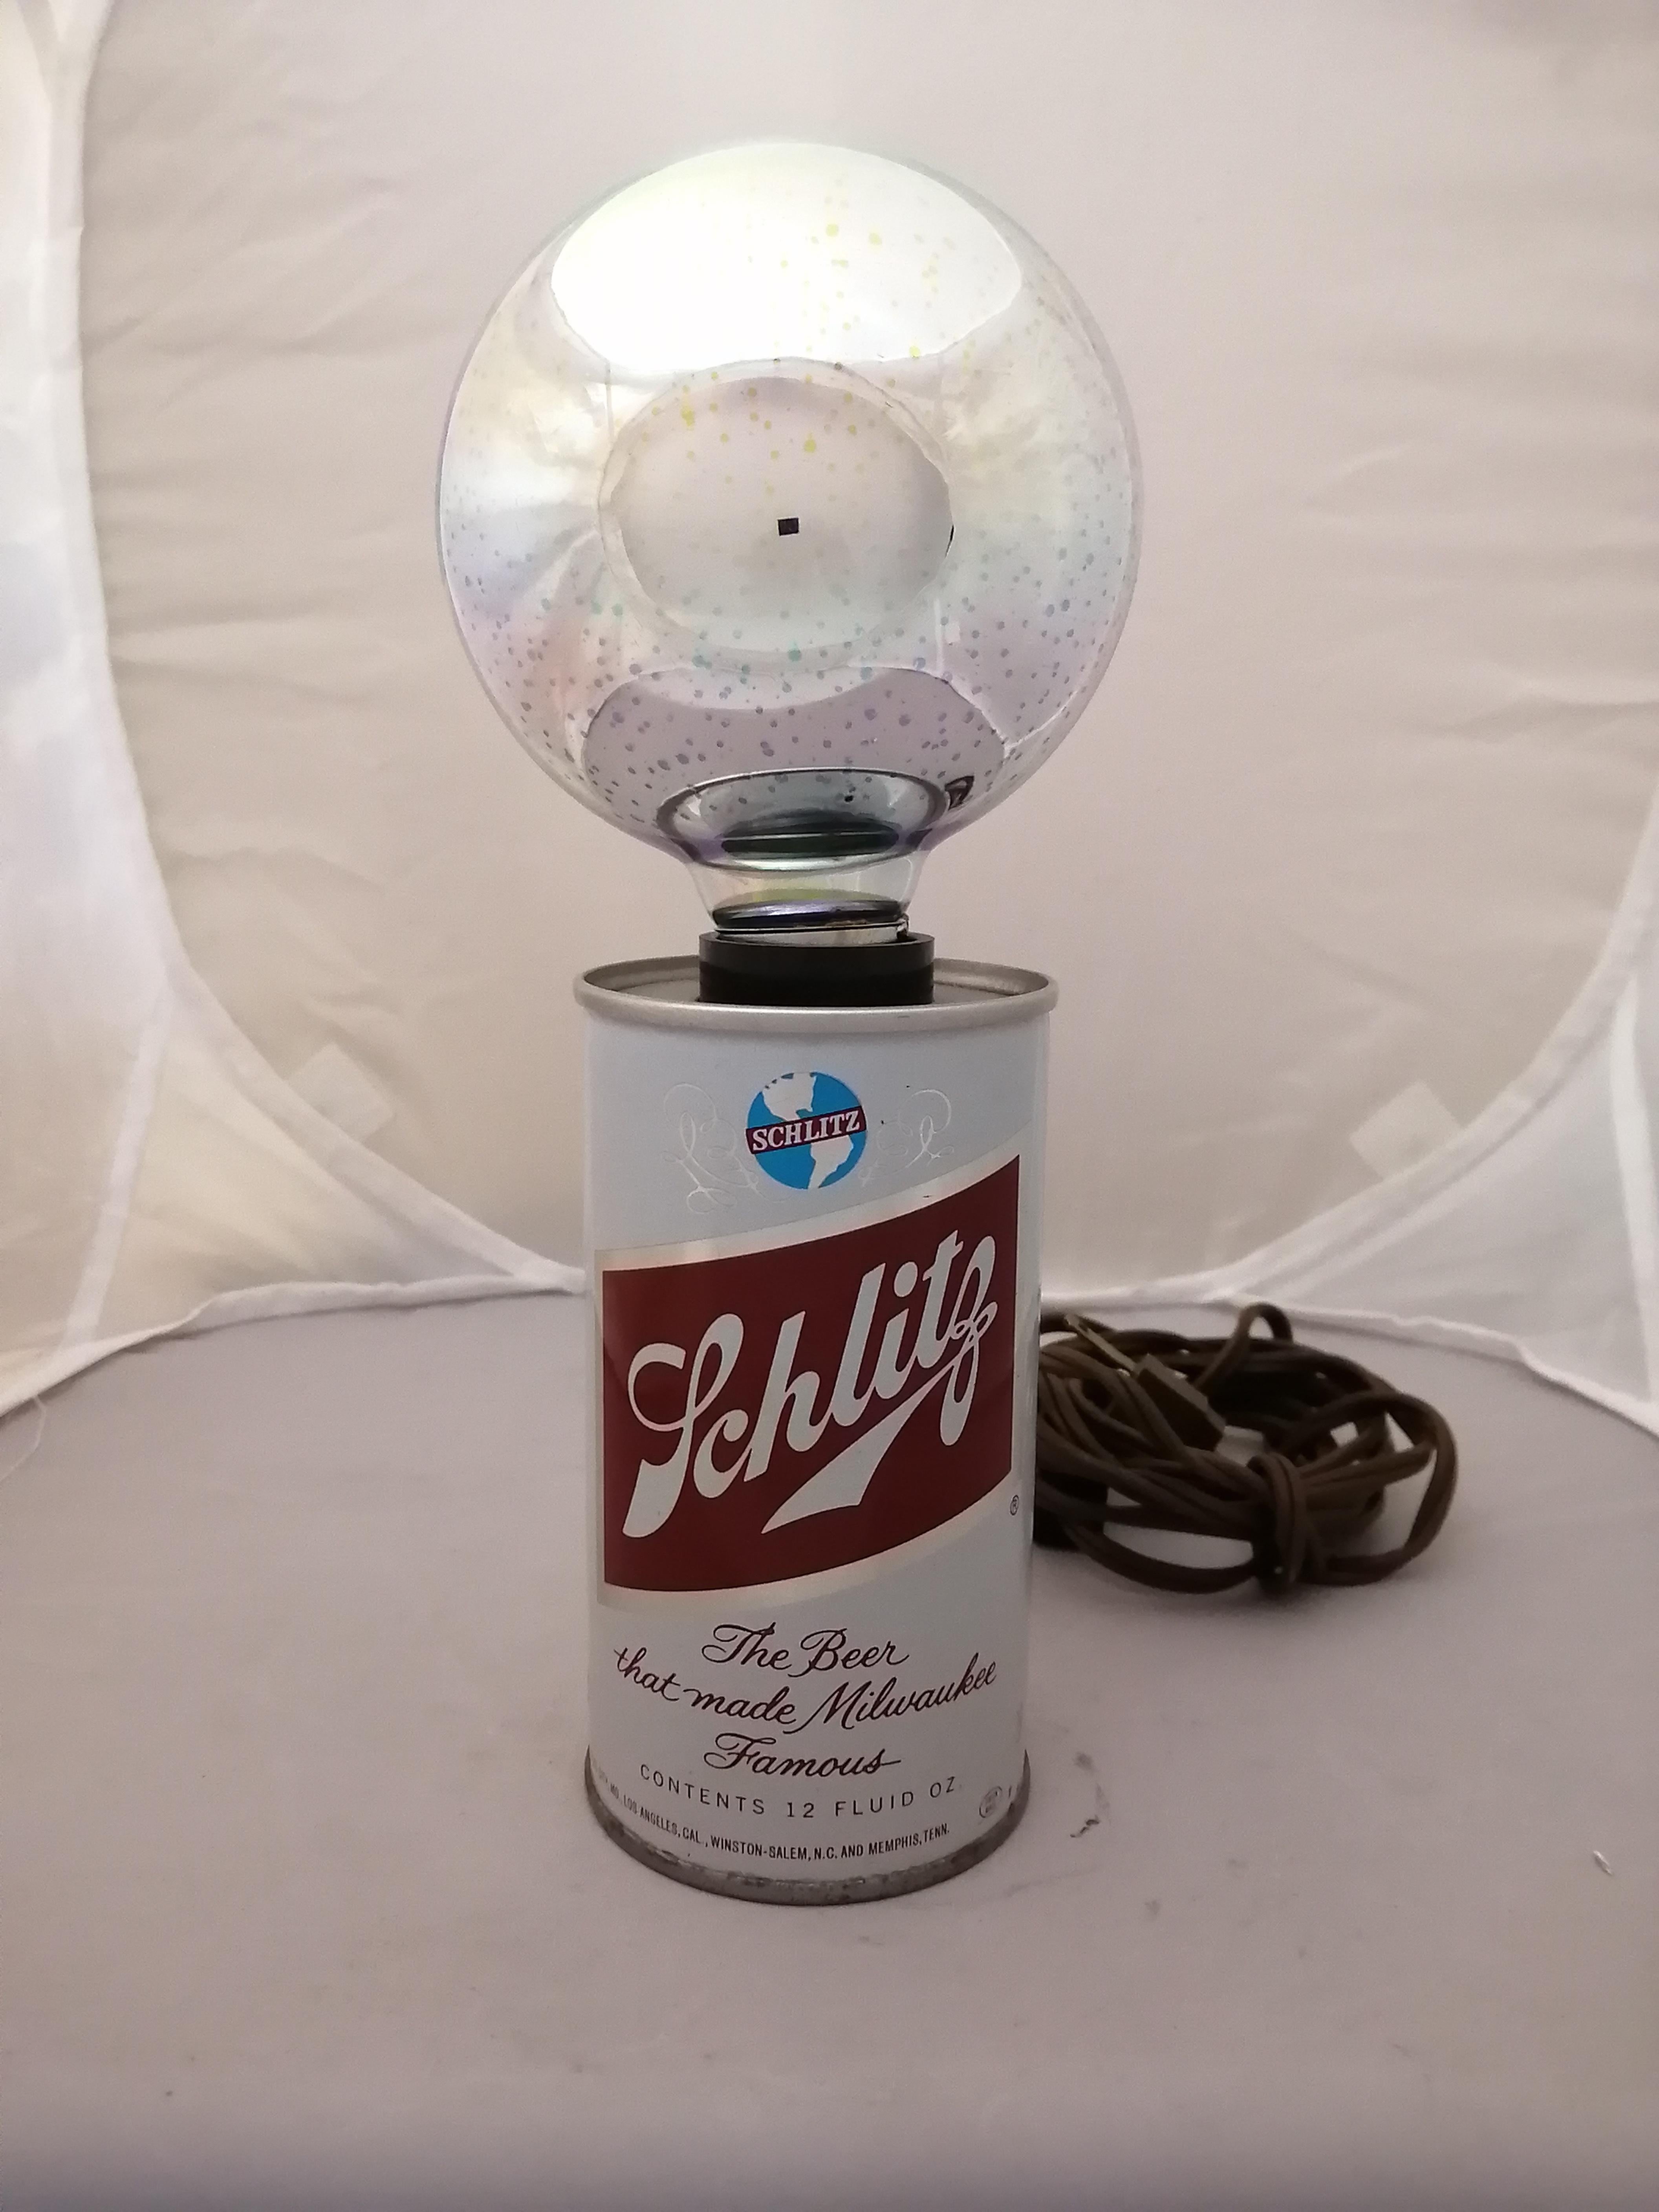 Lampe de table américaine des années 1970 en forme de canette de bière Schlitz par la société IMS. La lampe comprend une ampoule multicolore pour remplacer l'ampoule originale manquante. Présence d'un autocollant sur le dessus. Boîte d'origine